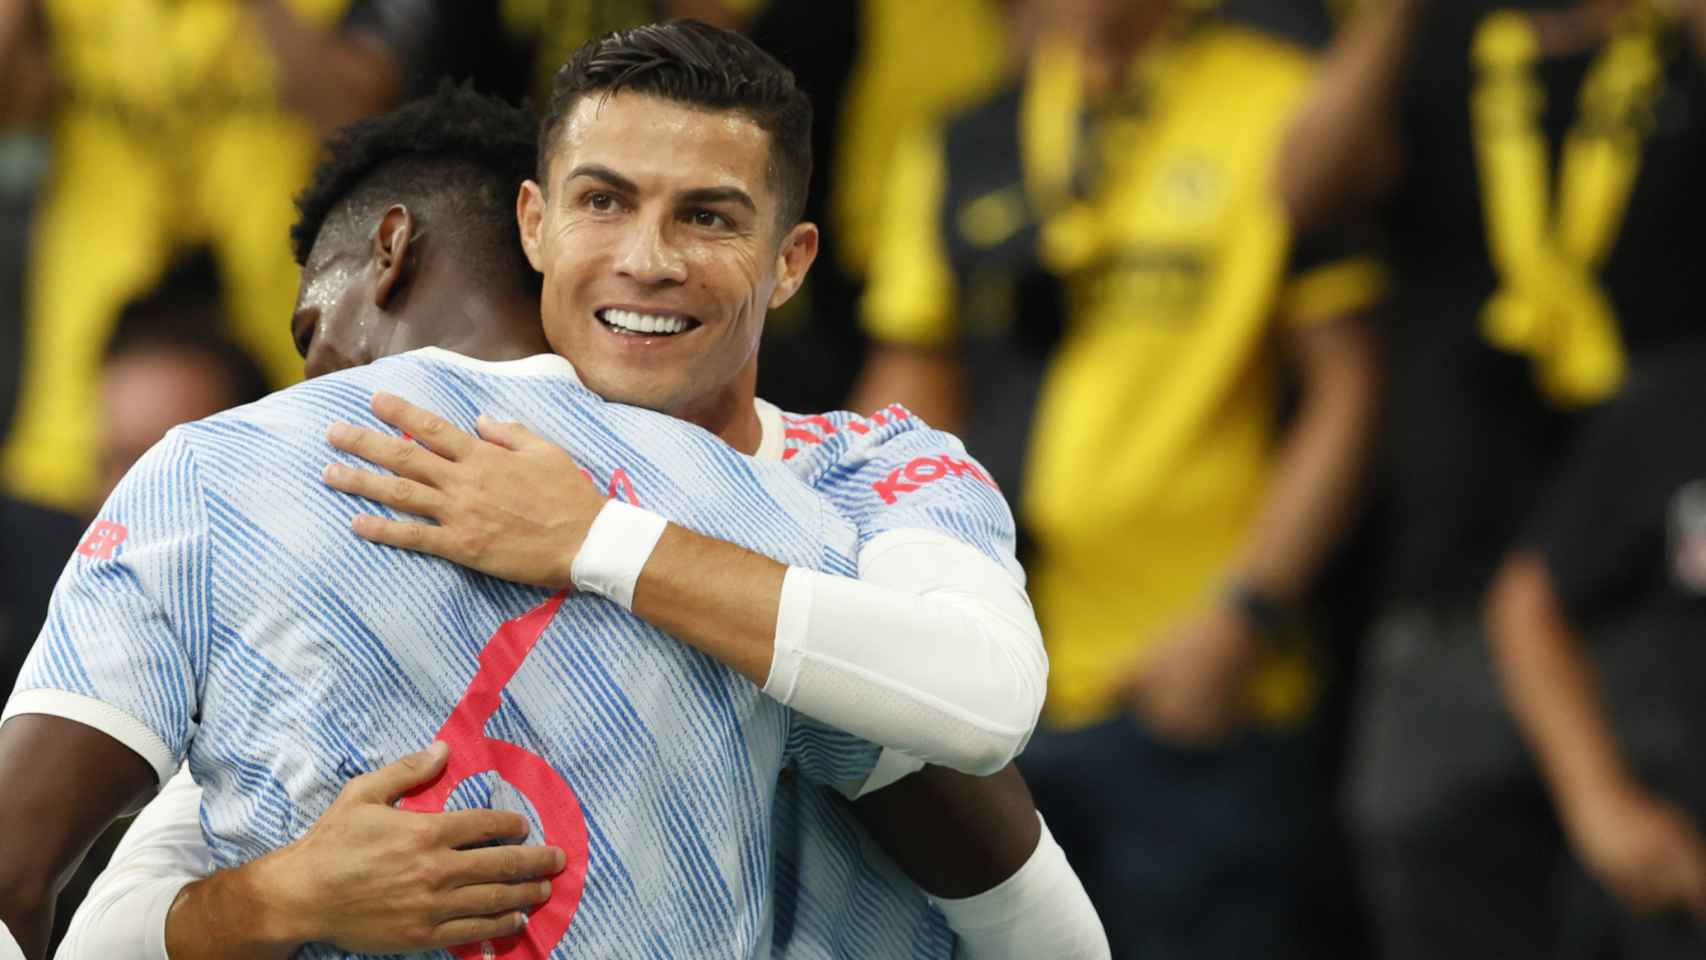 Abrazo de Paul Pogba y Cristiano Ronaldo